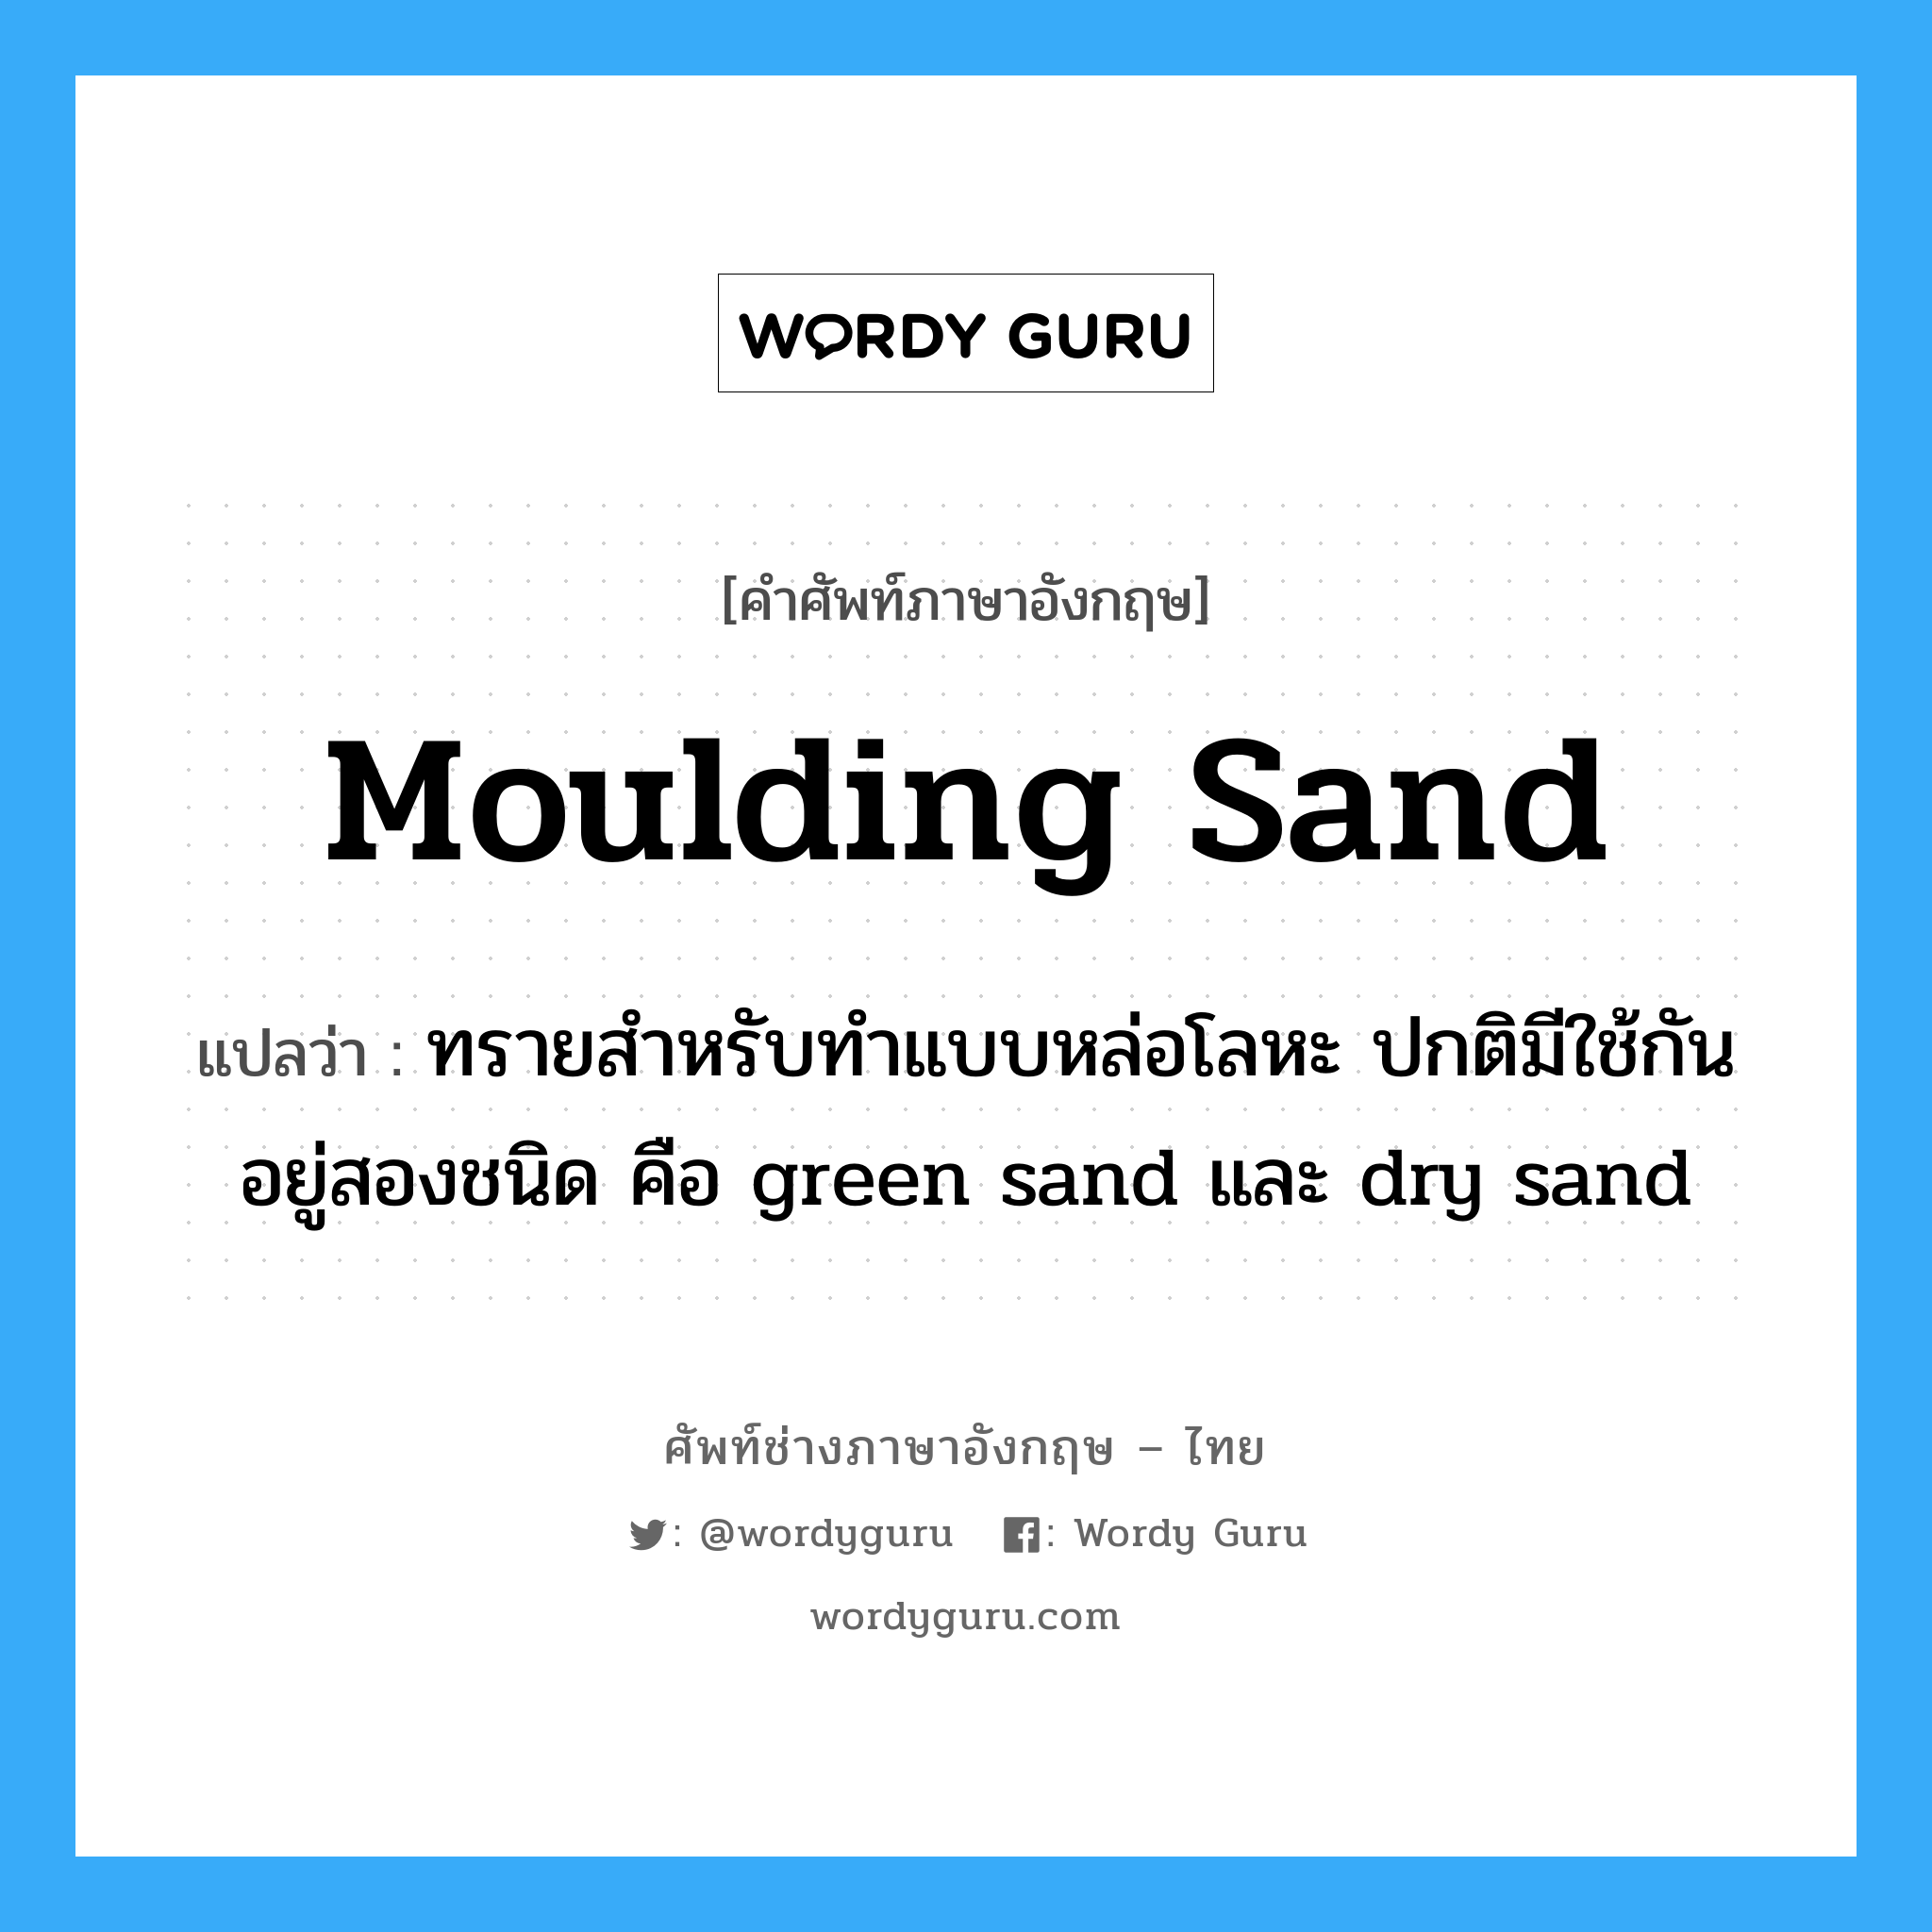 ทรายสำหรับทำแบบหล่อโลหะ ปกติมีใช้กันอยู่สองชนิด คือ green sand และ dry sand ภาษาอังกฤษ?, คำศัพท์ช่างภาษาอังกฤษ - ไทย ทรายสำหรับทำแบบหล่อโลหะ ปกติมีใช้กันอยู่สองชนิด คือ green sand และ dry sand คำศัพท์ภาษาอังกฤษ ทรายสำหรับทำแบบหล่อโลหะ ปกติมีใช้กันอยู่สองชนิด คือ green sand และ dry sand แปลว่า moulding sand